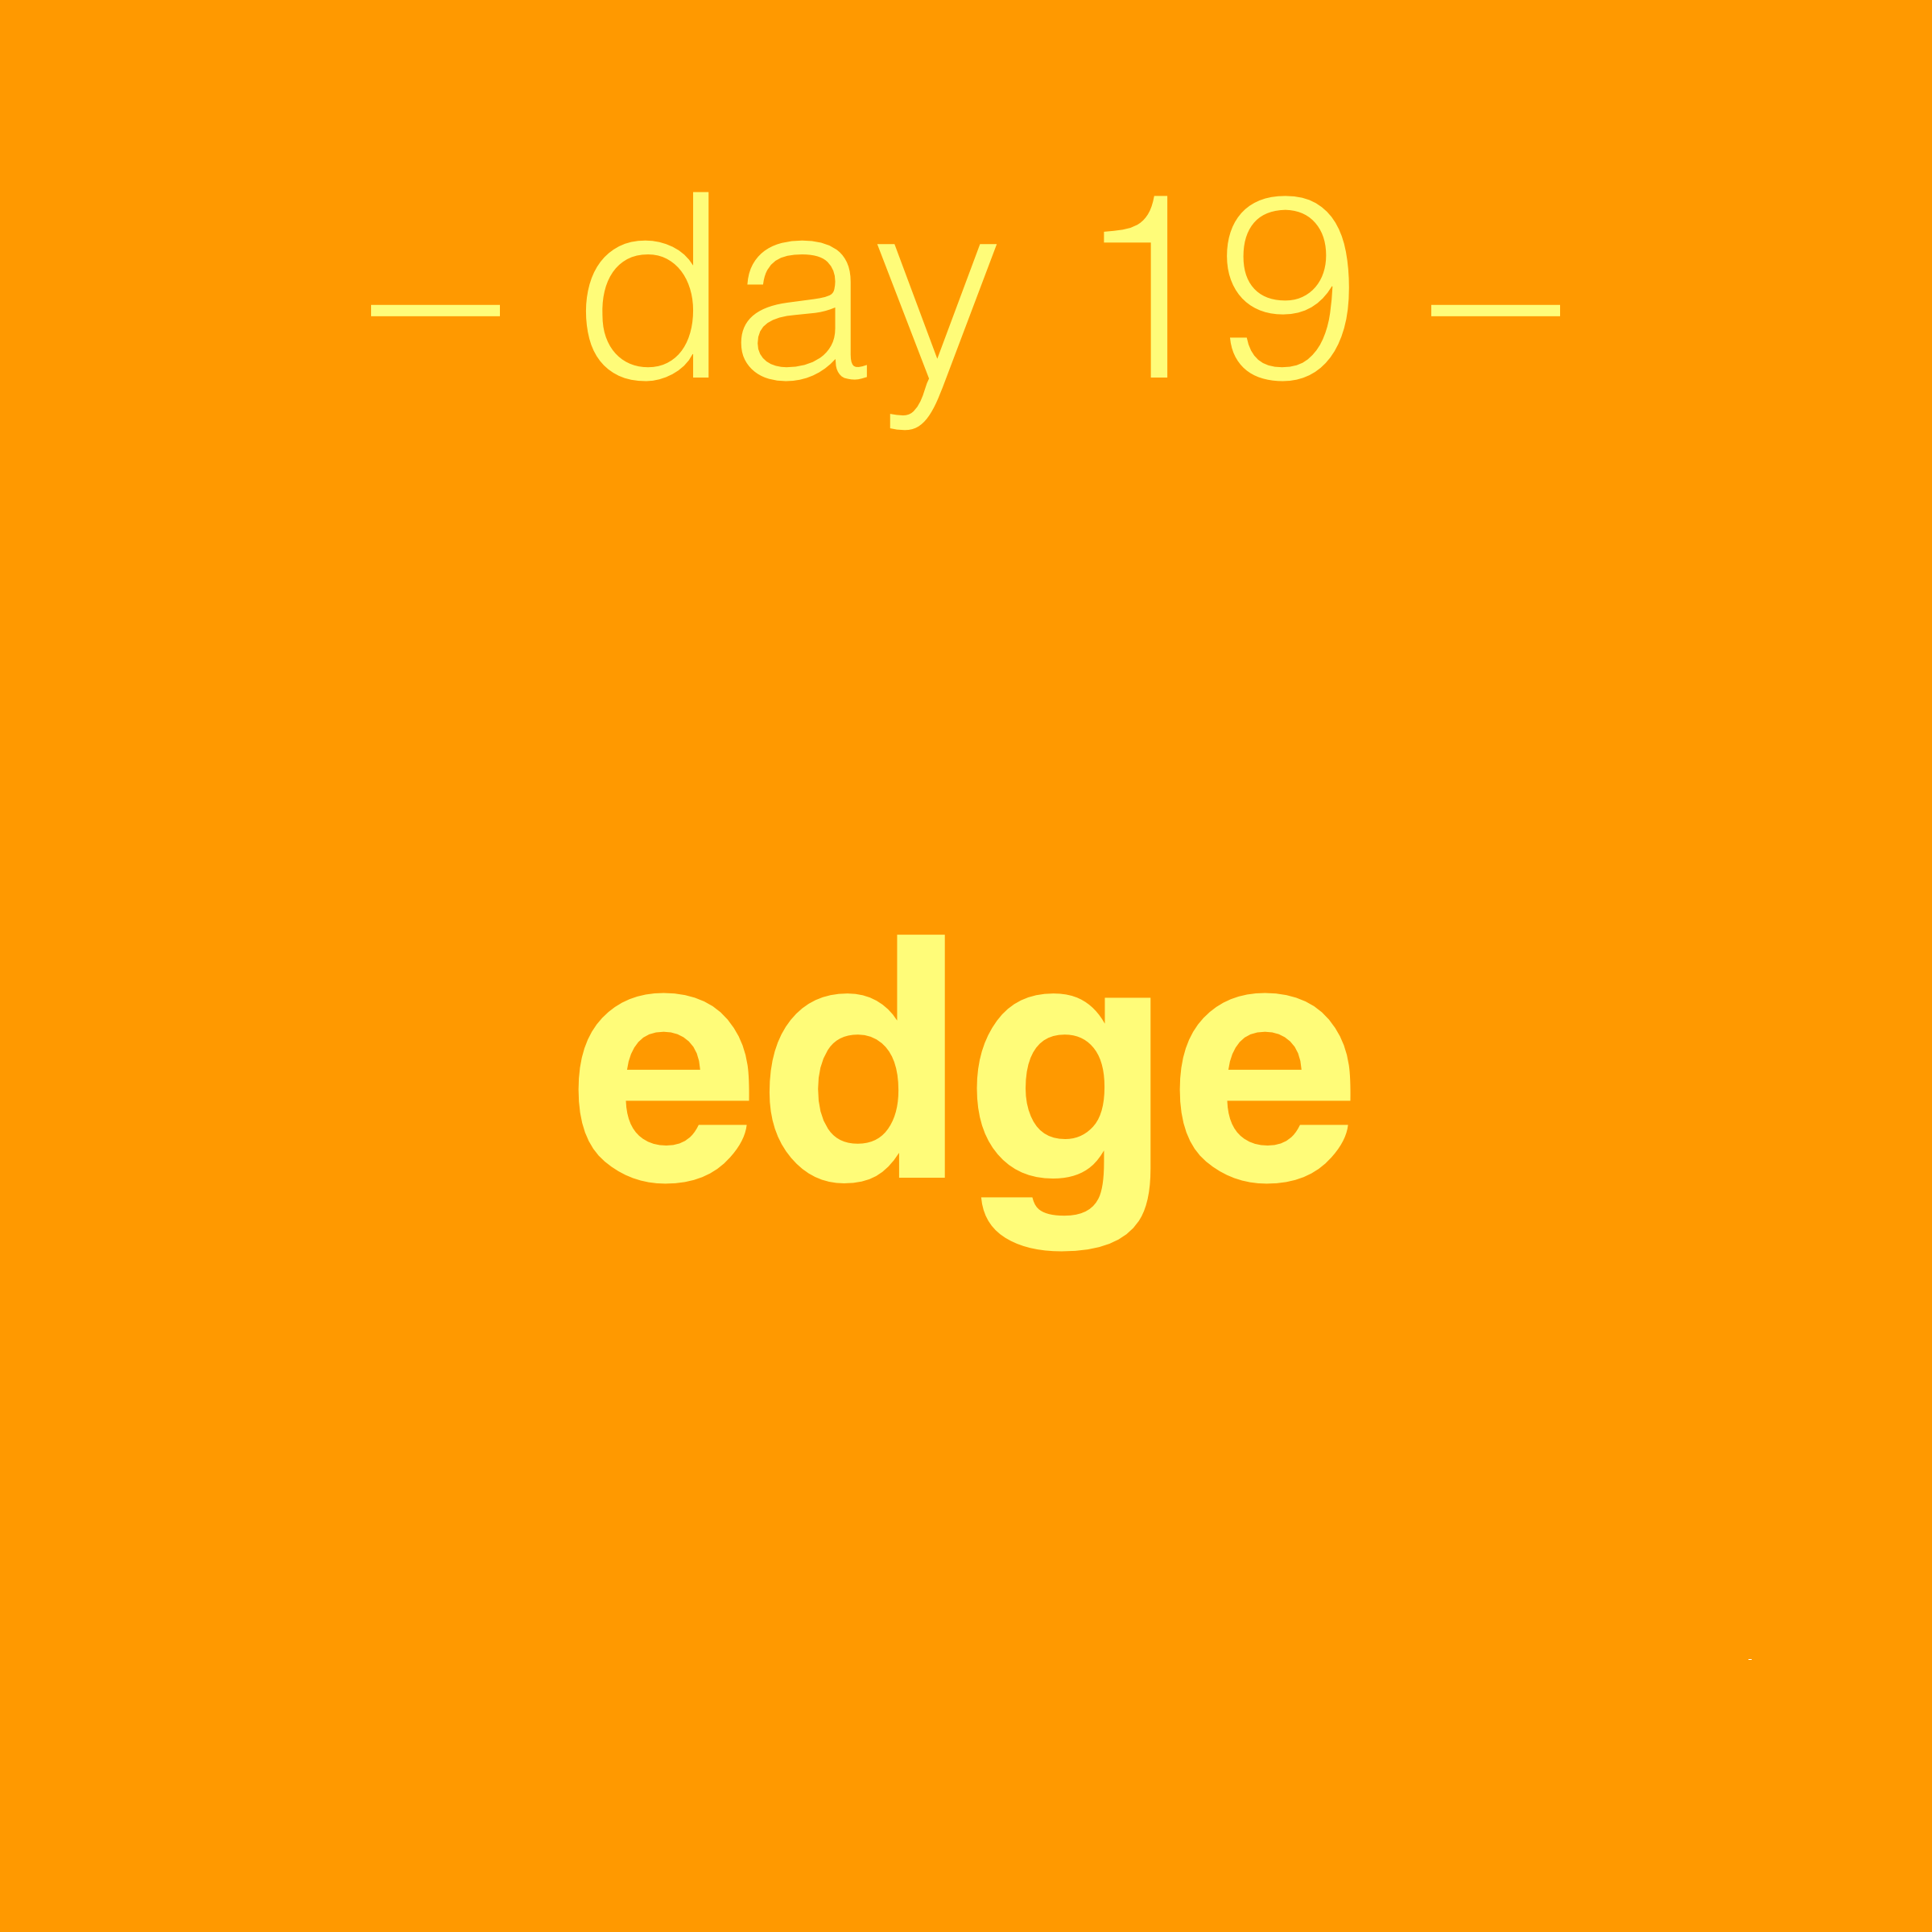 day19-edge